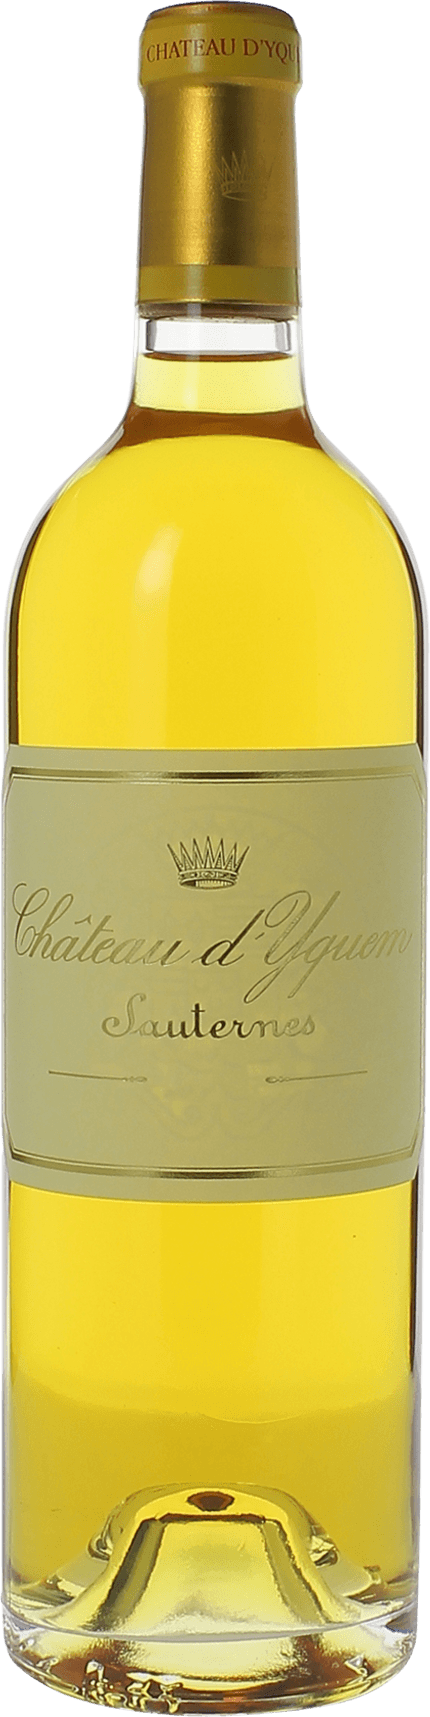 Yquem 2016 1er Grand cru class Sauternes, Bordeaux blanc